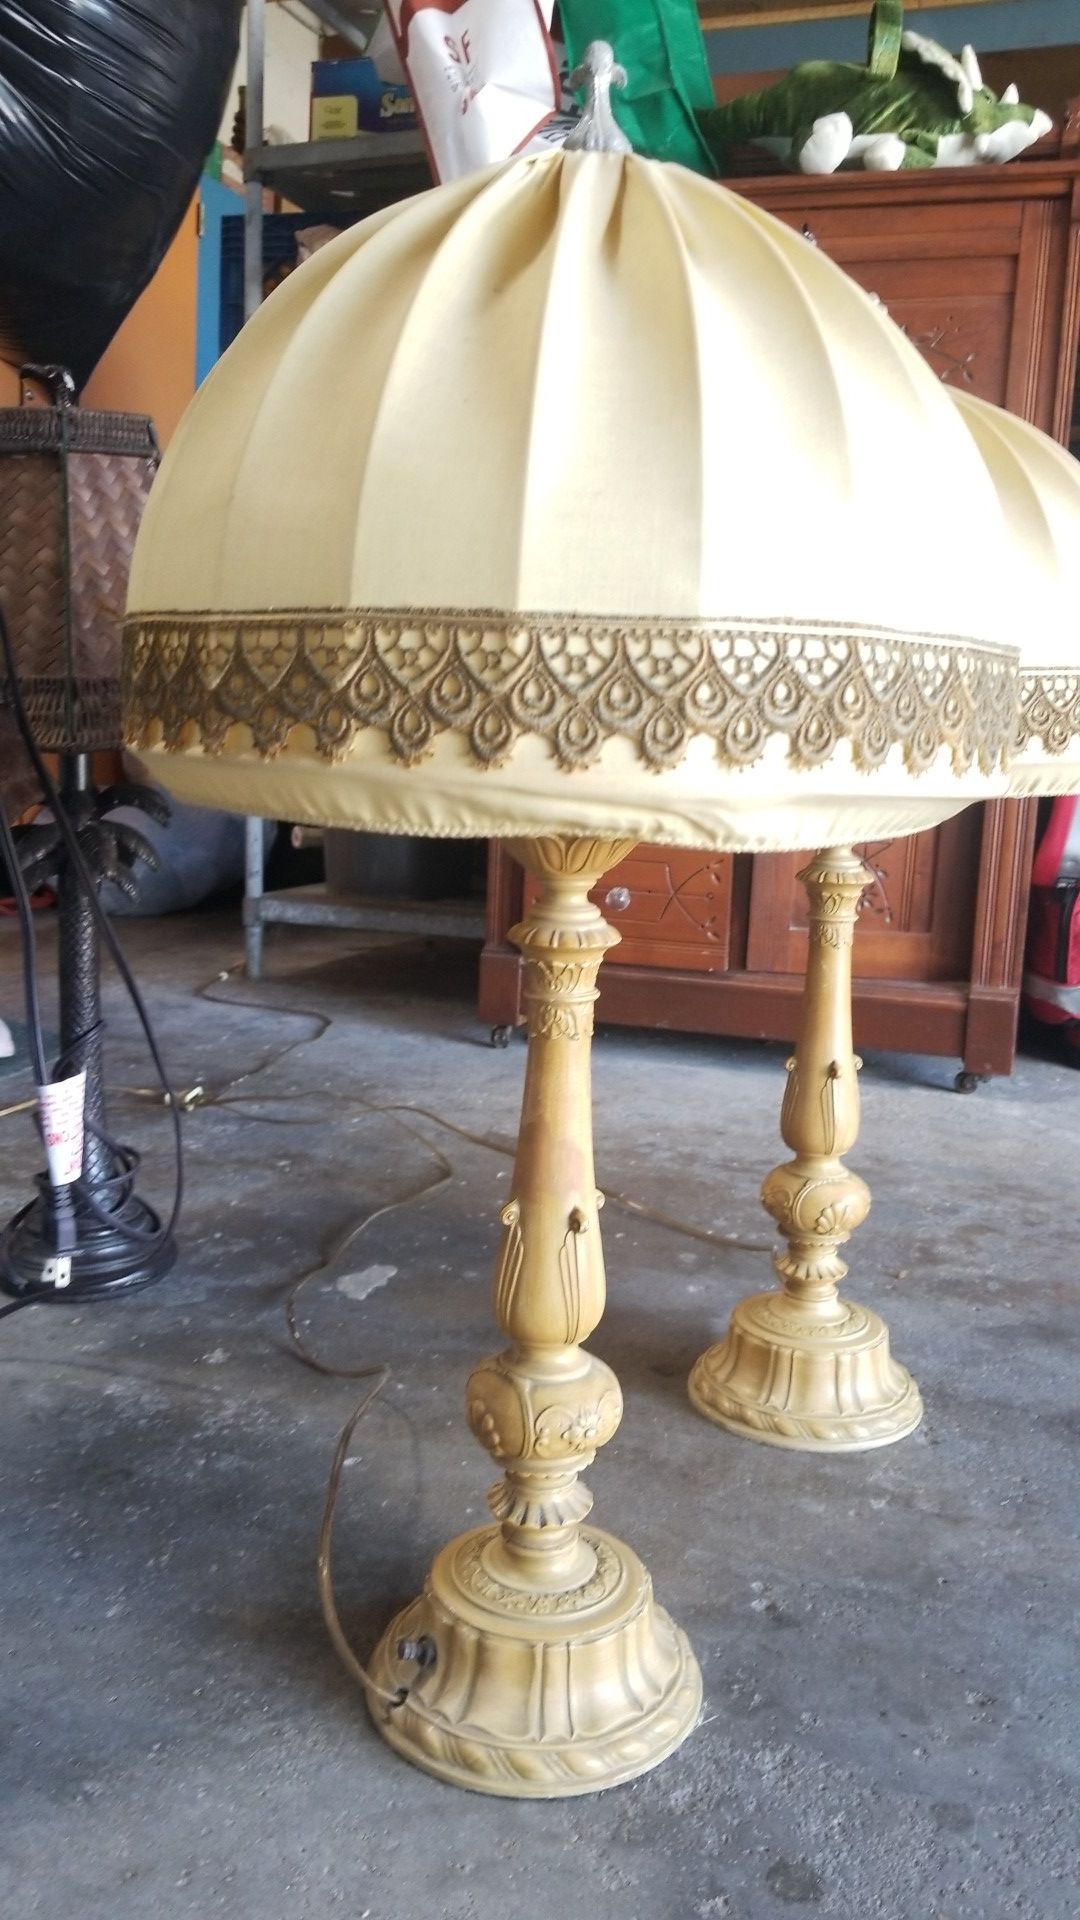 2 Antique Victorian lamps